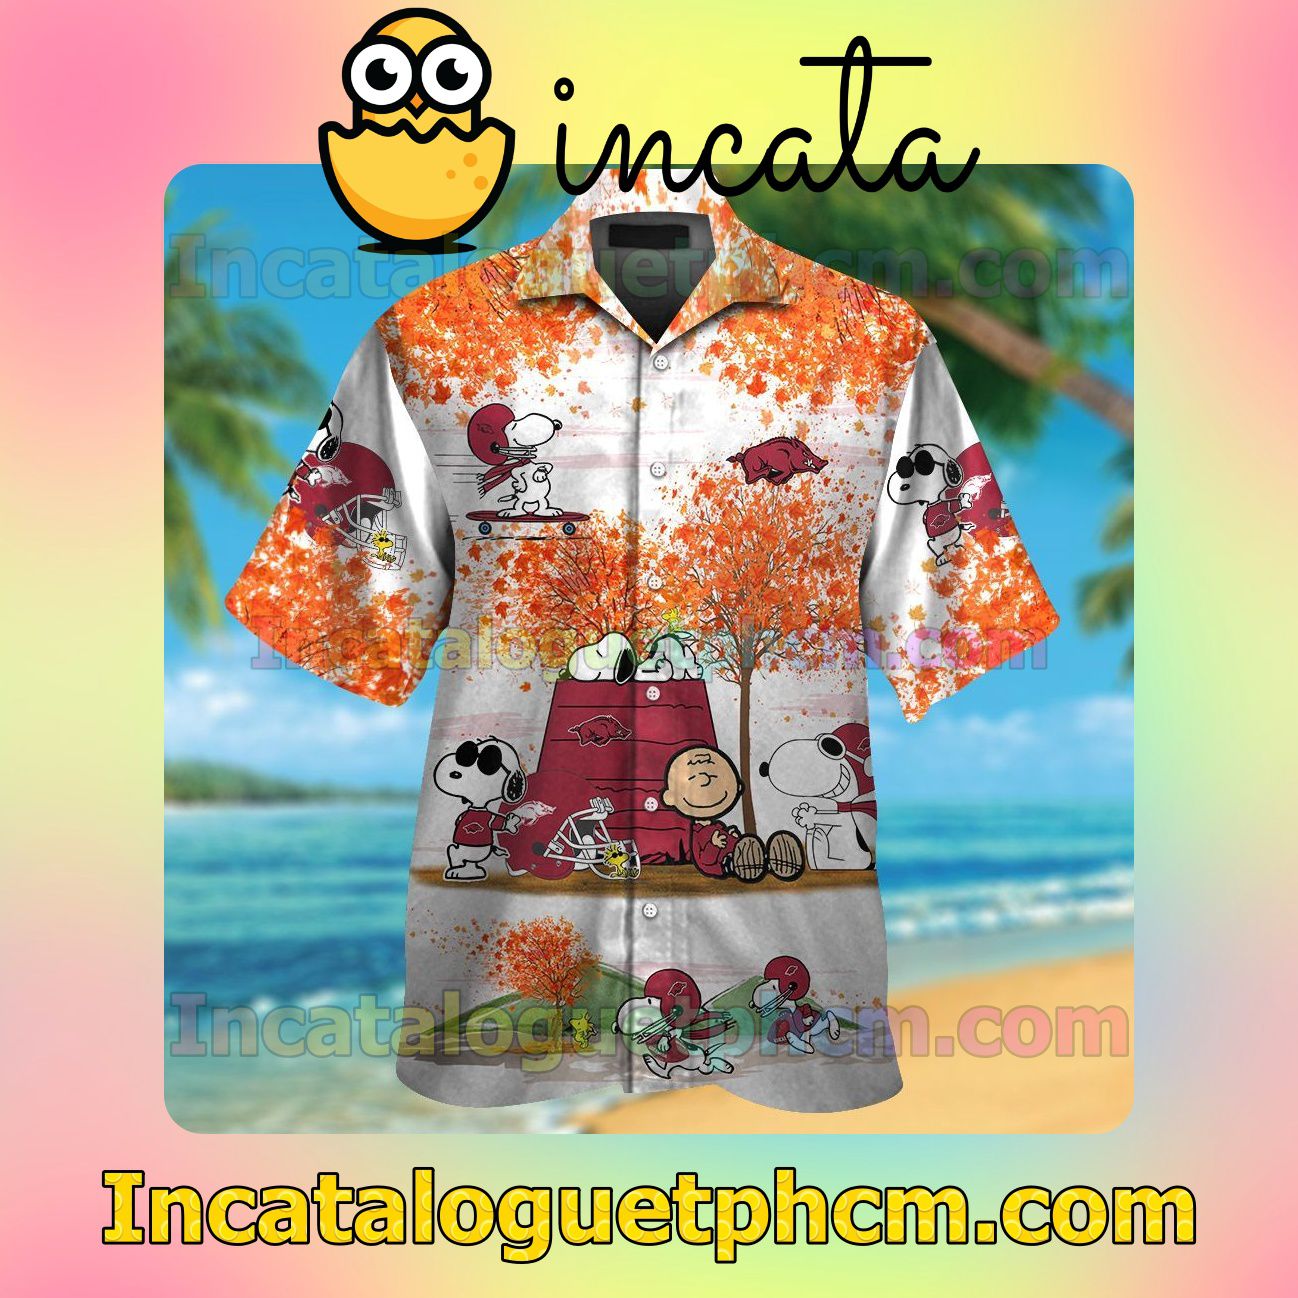 Arkansas Razorbacks Snoopy Autumn Beach Vacation Shirt, Swim Shorts